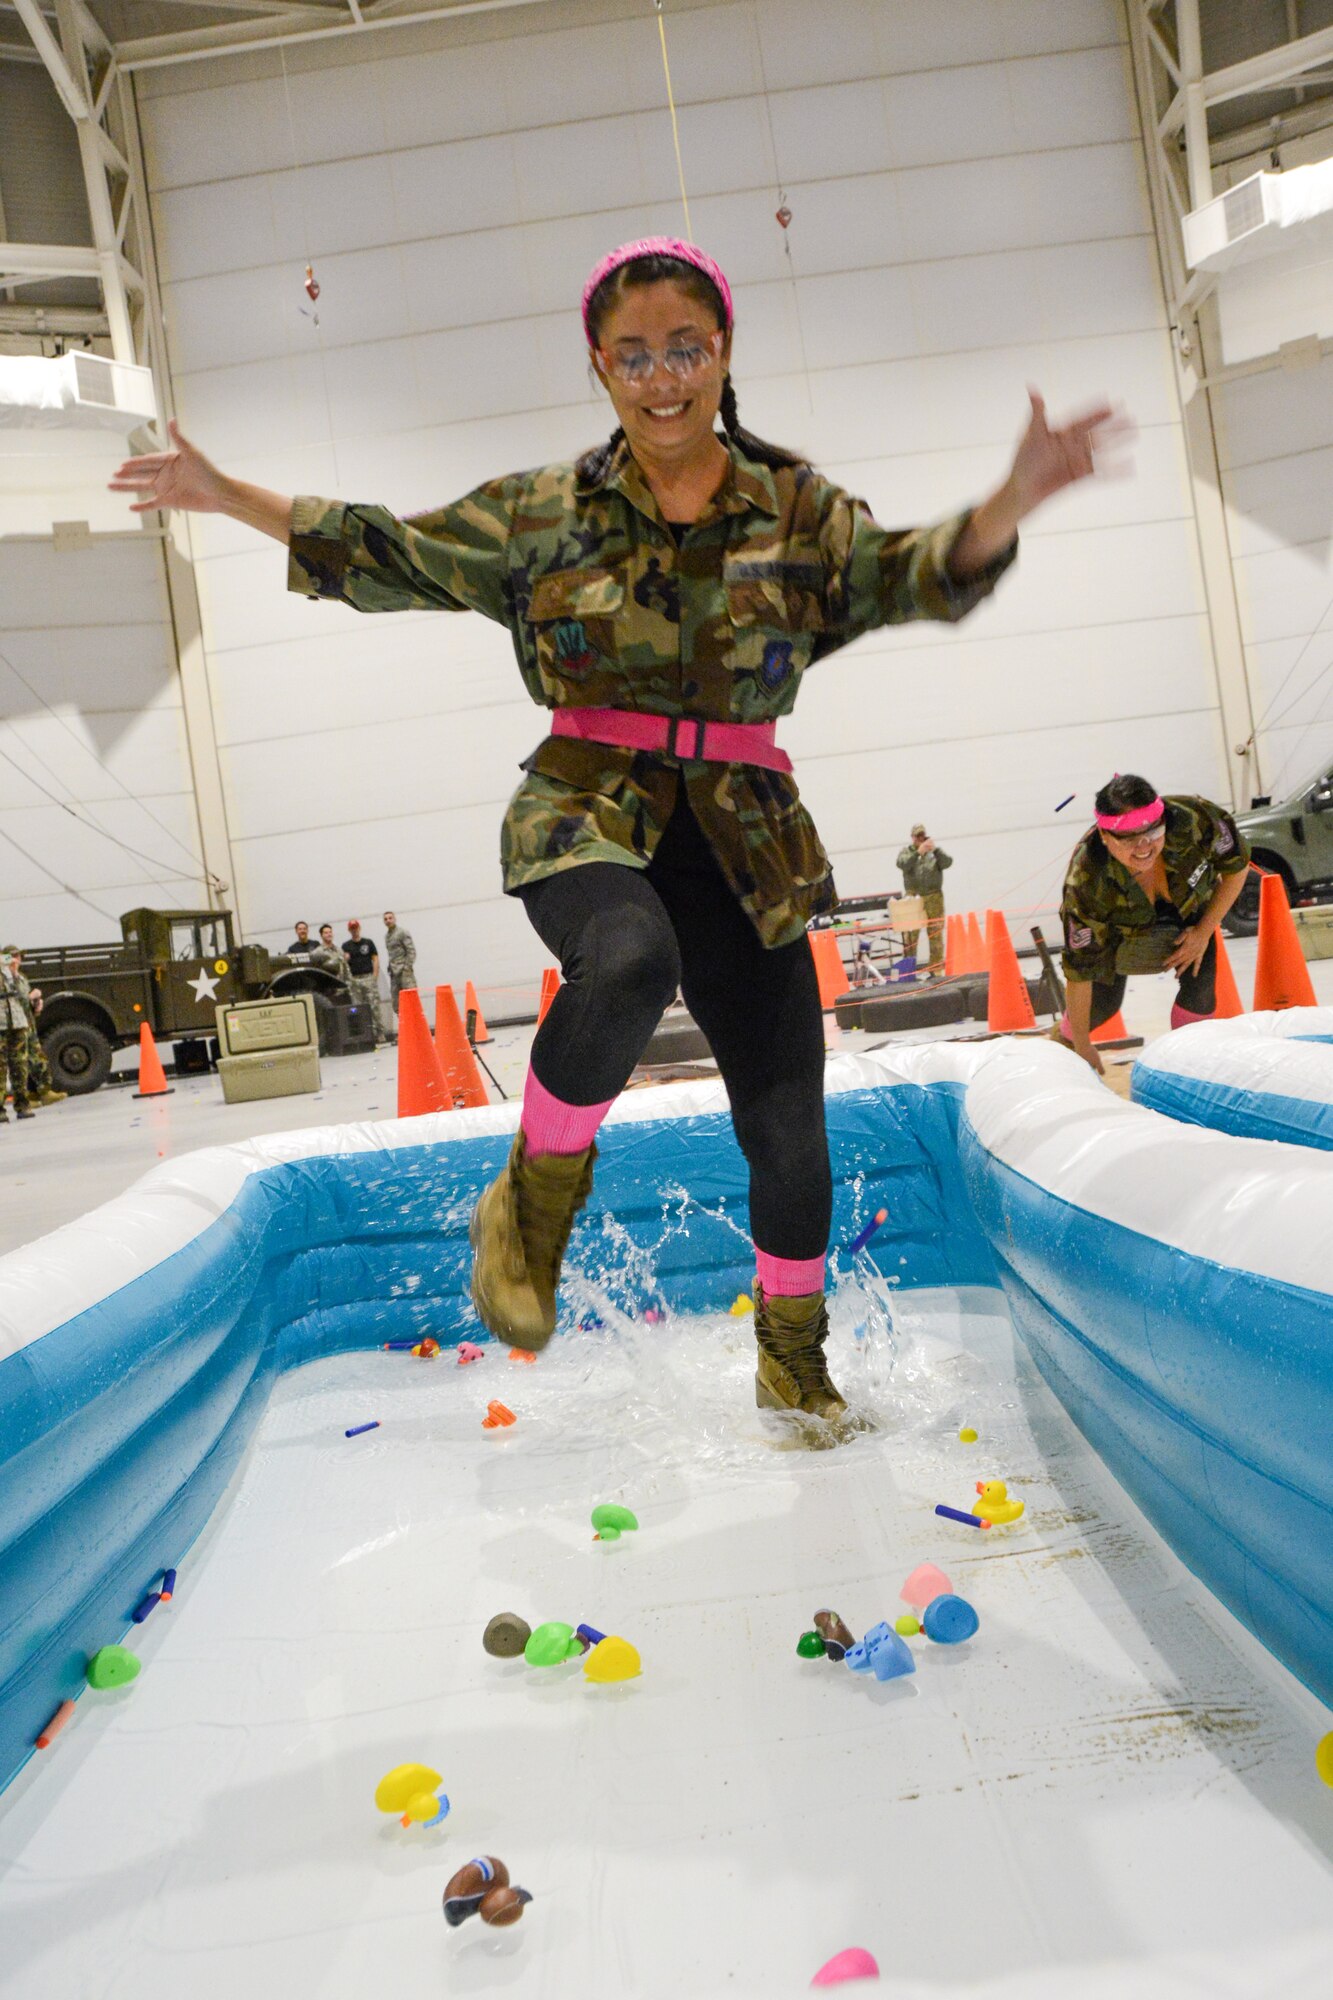 A Texas Air National Guard Airman runs through a pool of water and rubber duckies.